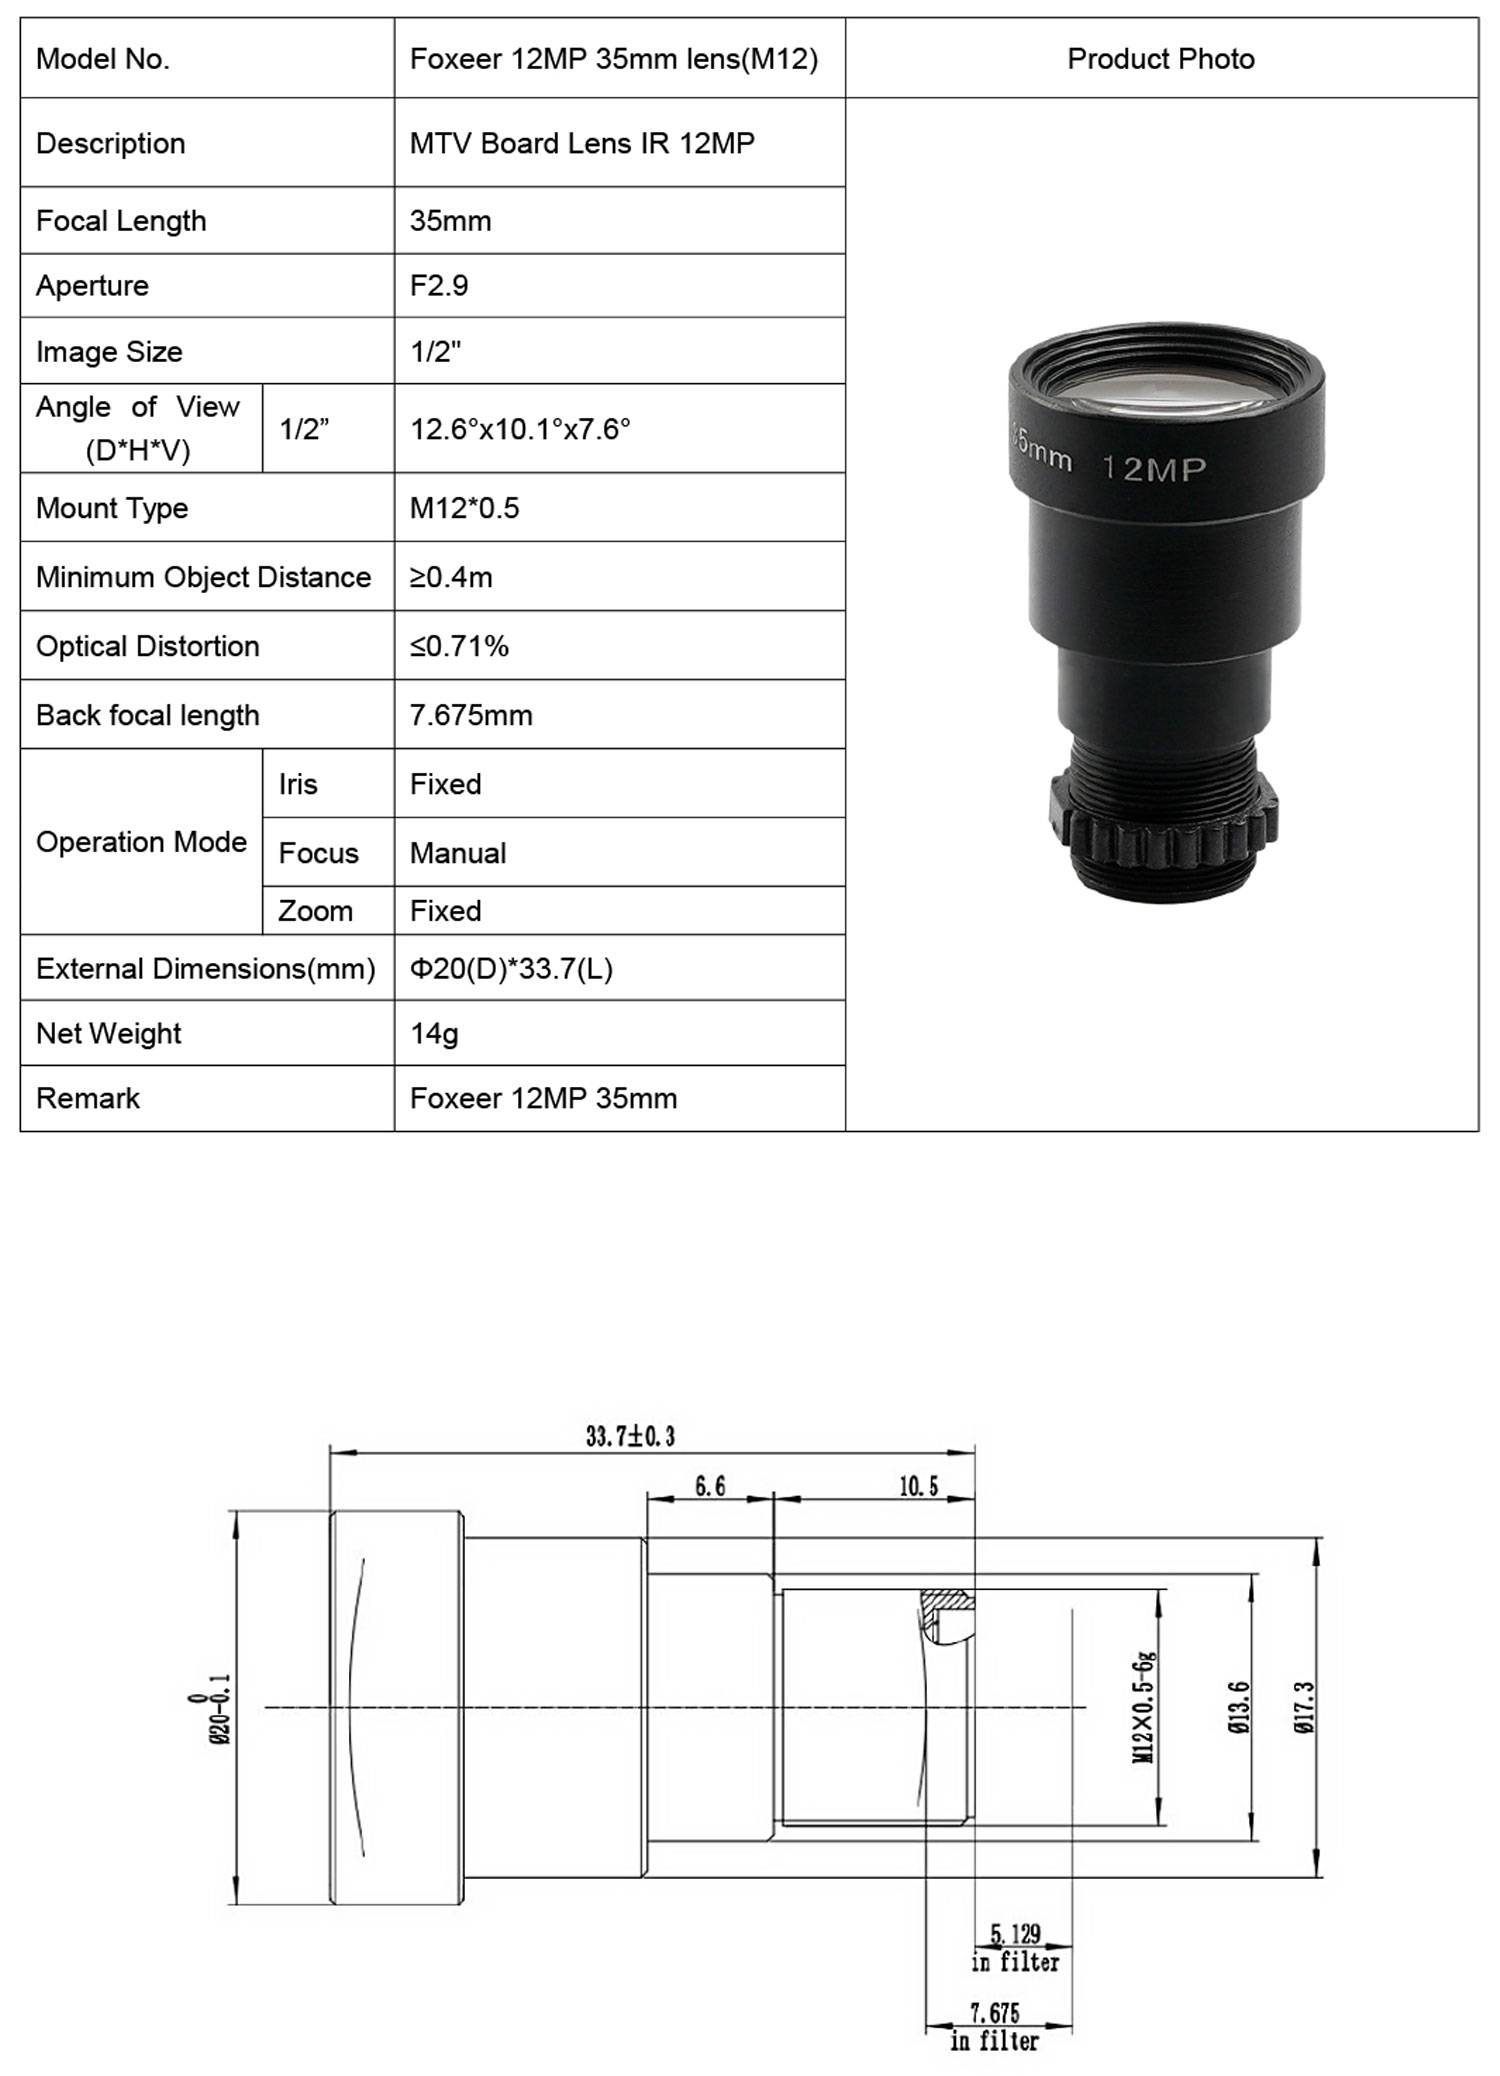 foxeer-35mm-scope-cam-lens_4.jpg